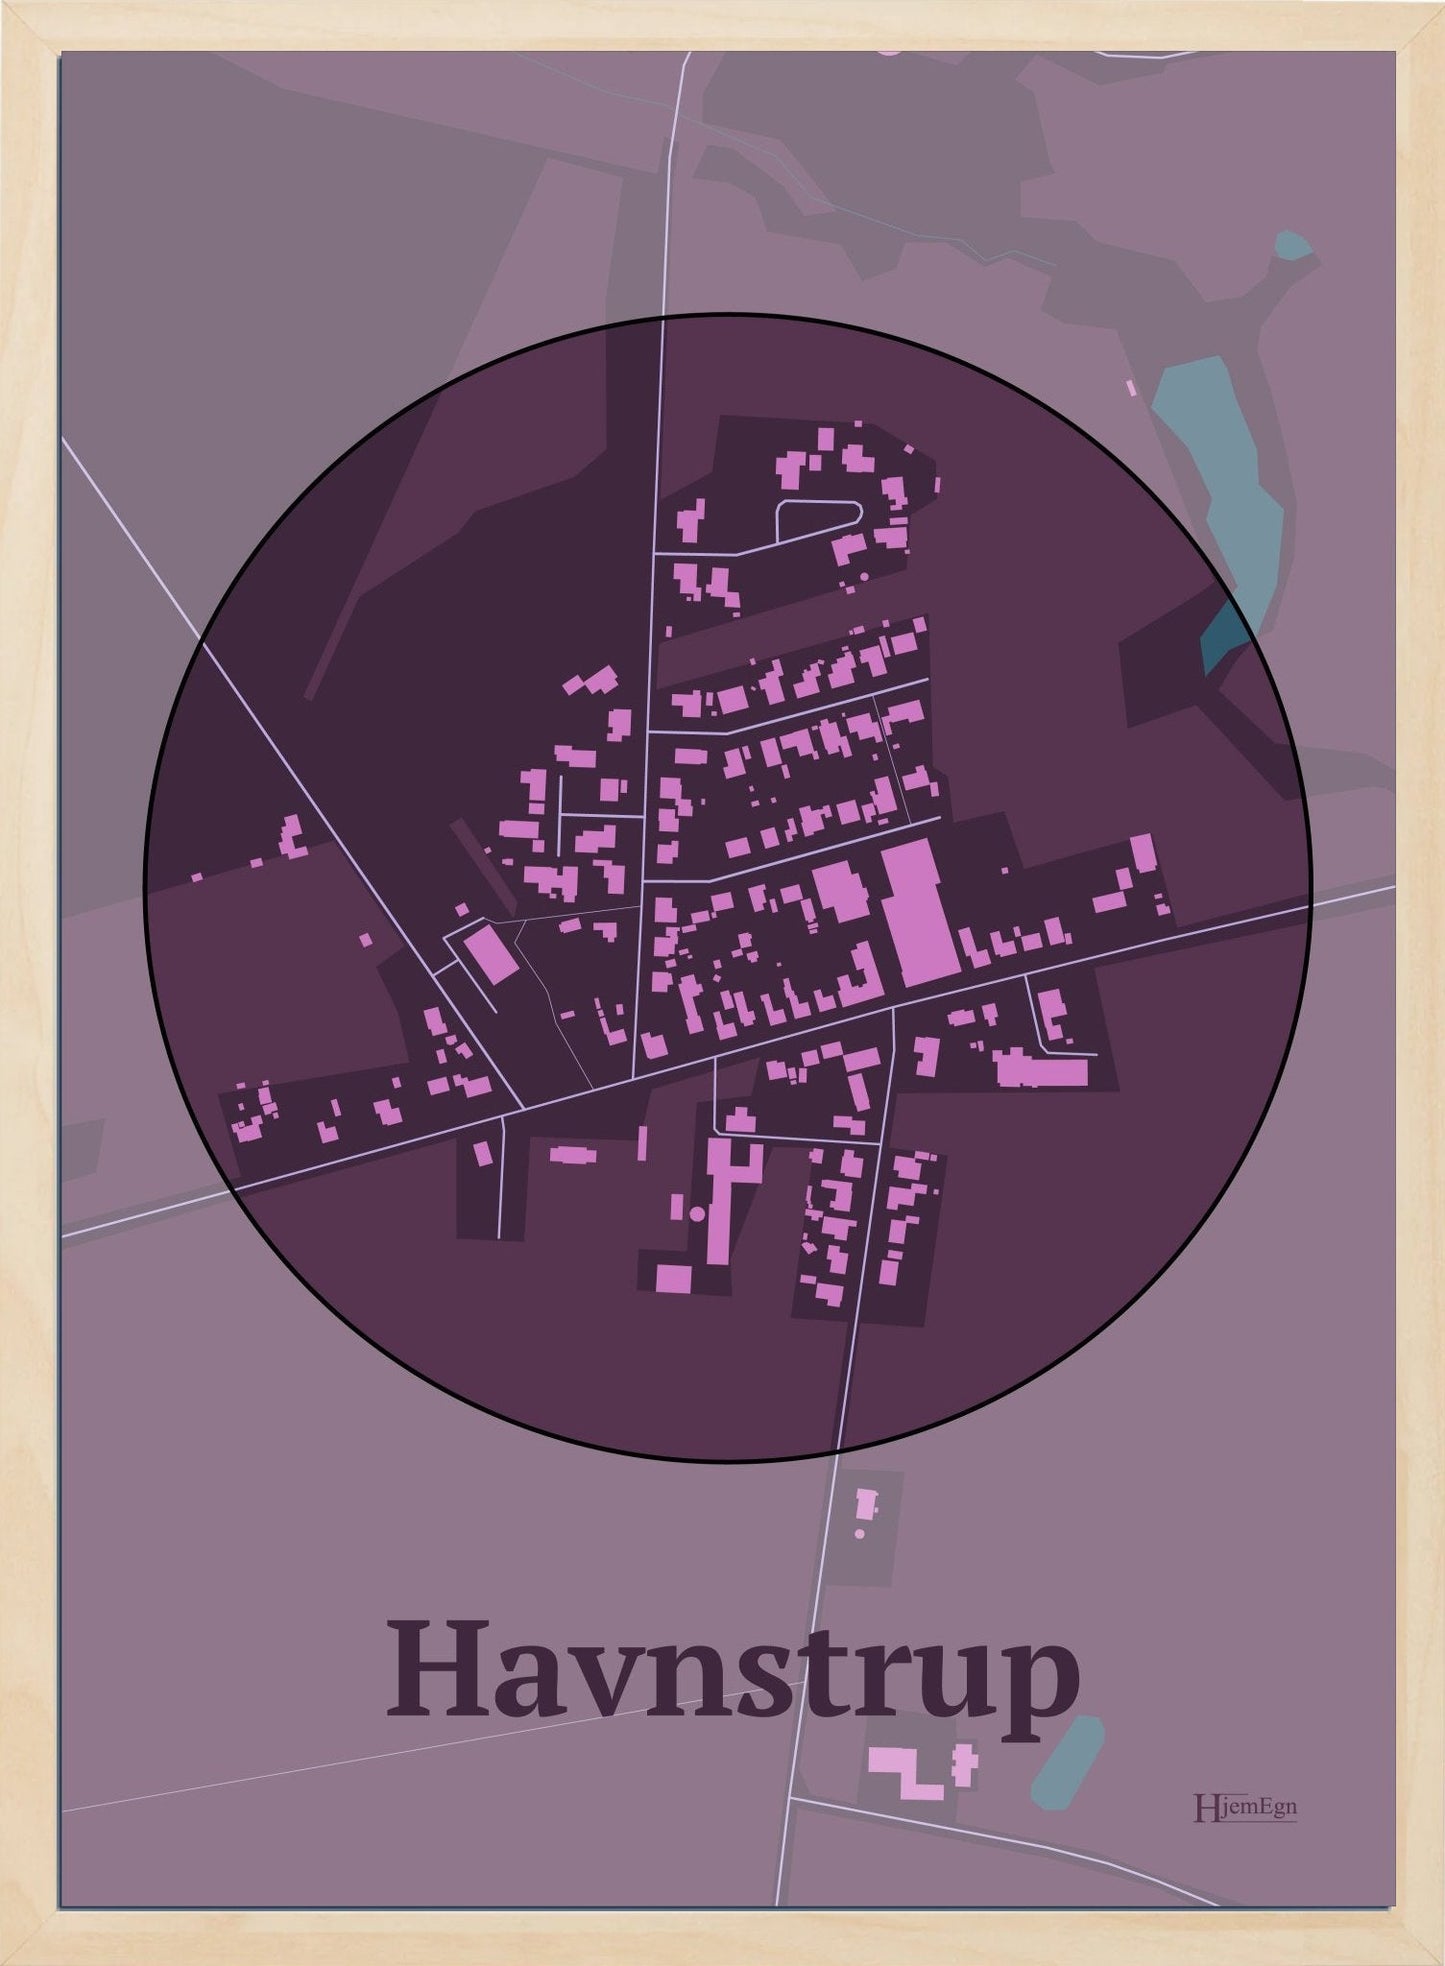 Havnstrup plakat i farve mørk rød og HjemEgn.dk design centrum. Design bykort for Havnstrup